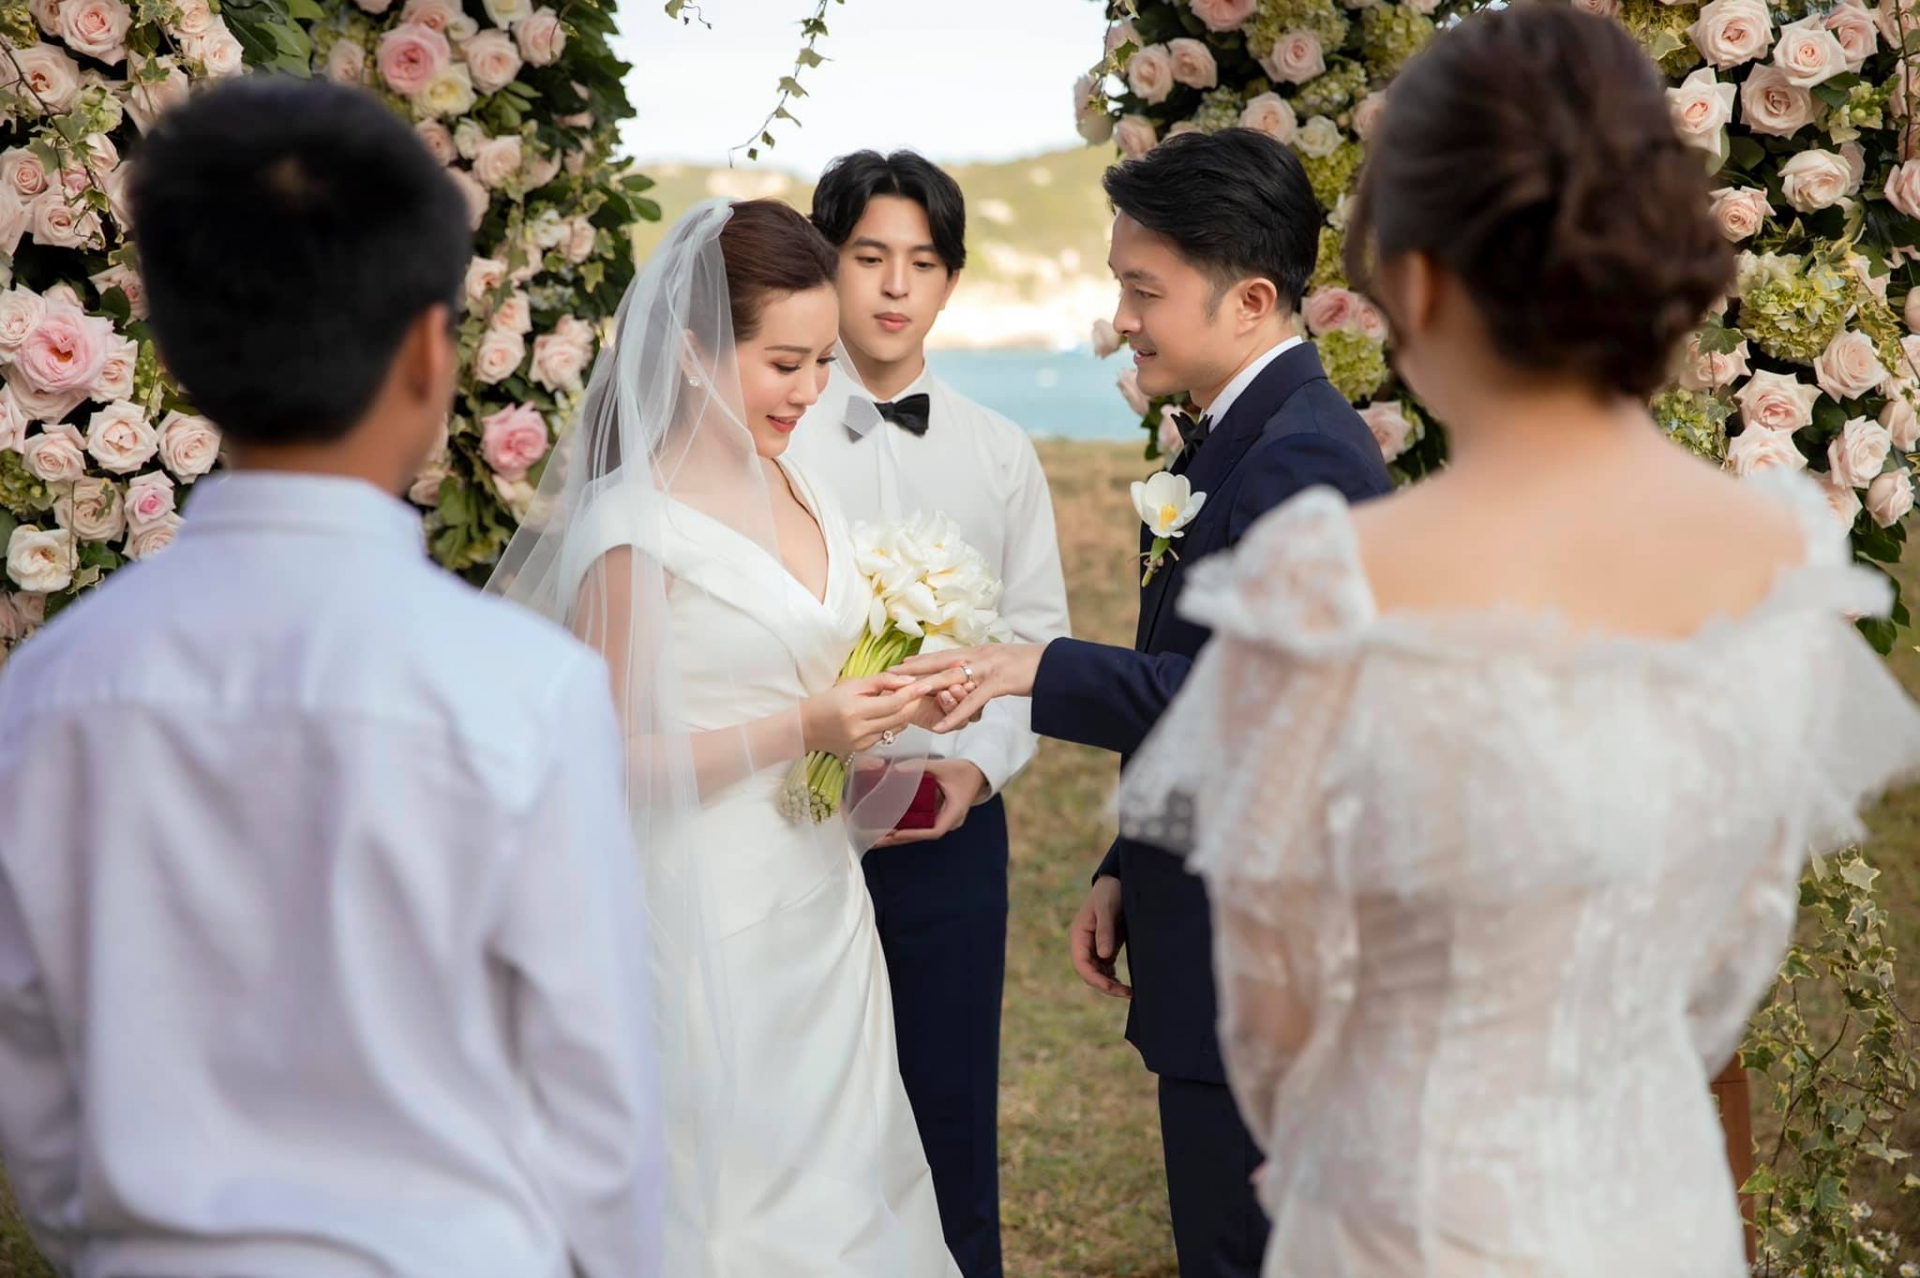 Hoa hậu Thu Hoài tổ chức hôn lễ dưới sự chứng kiến của 3 người con.